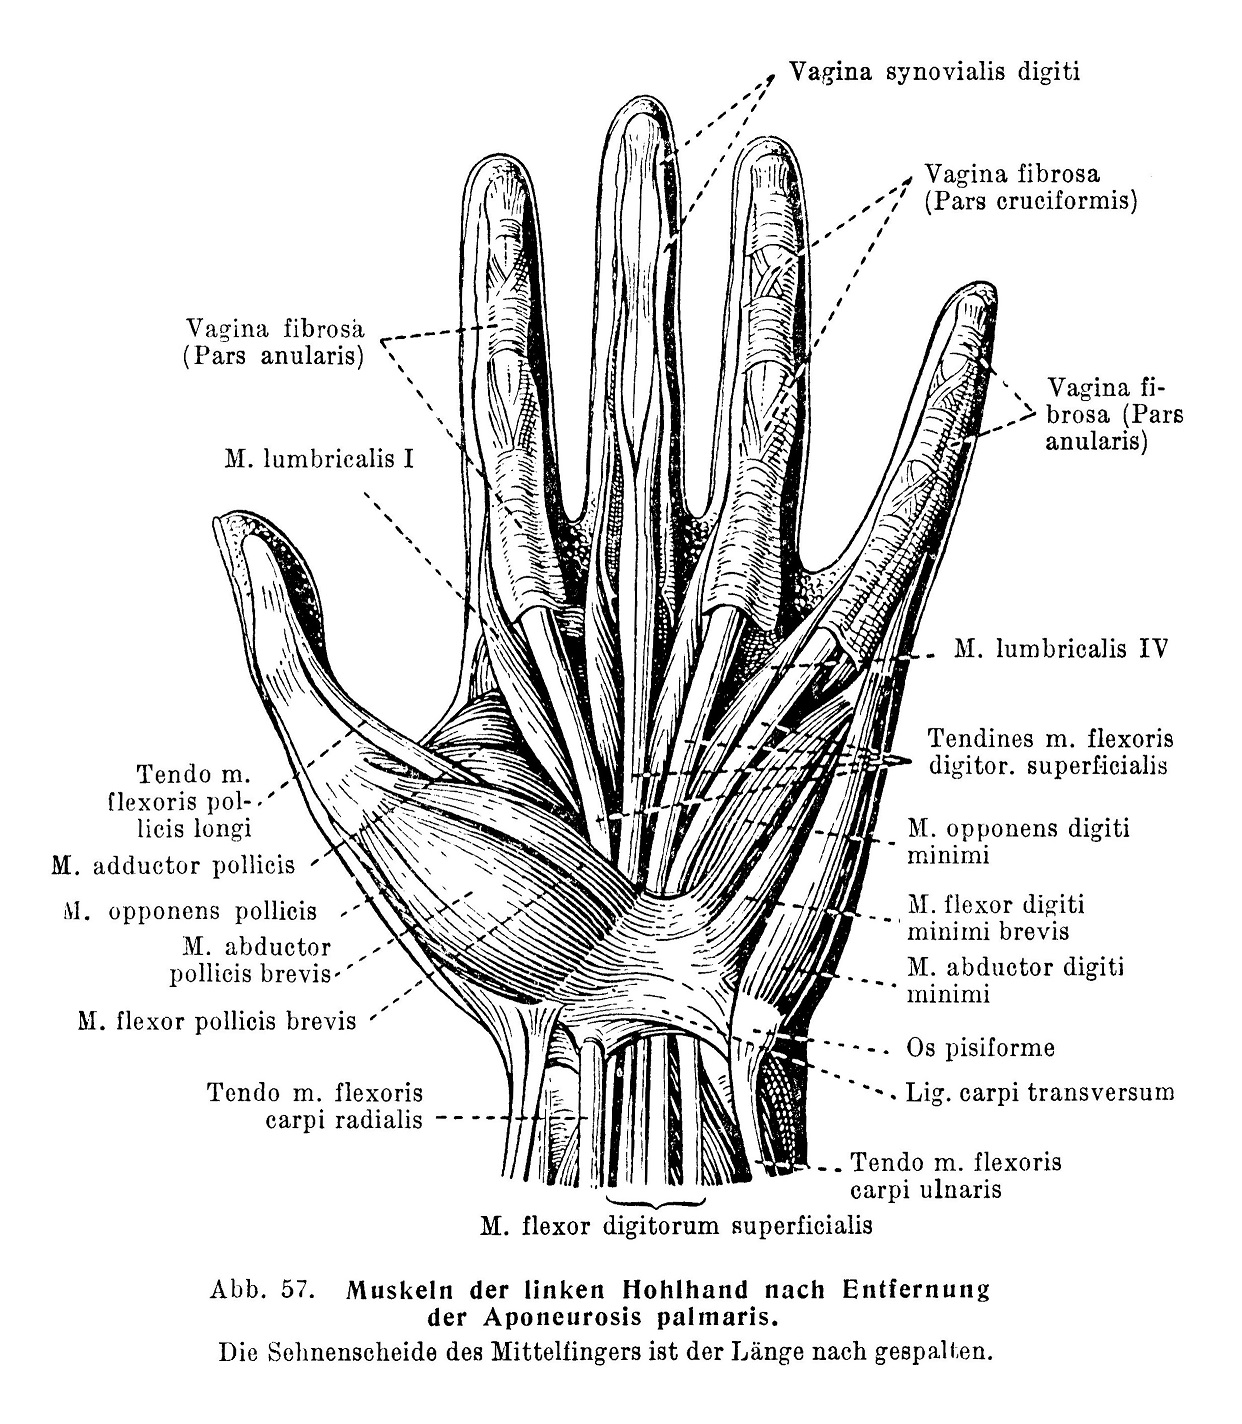 Muskuln der linken Hohlhand nach Entiernung der Aponeurosis palmaris